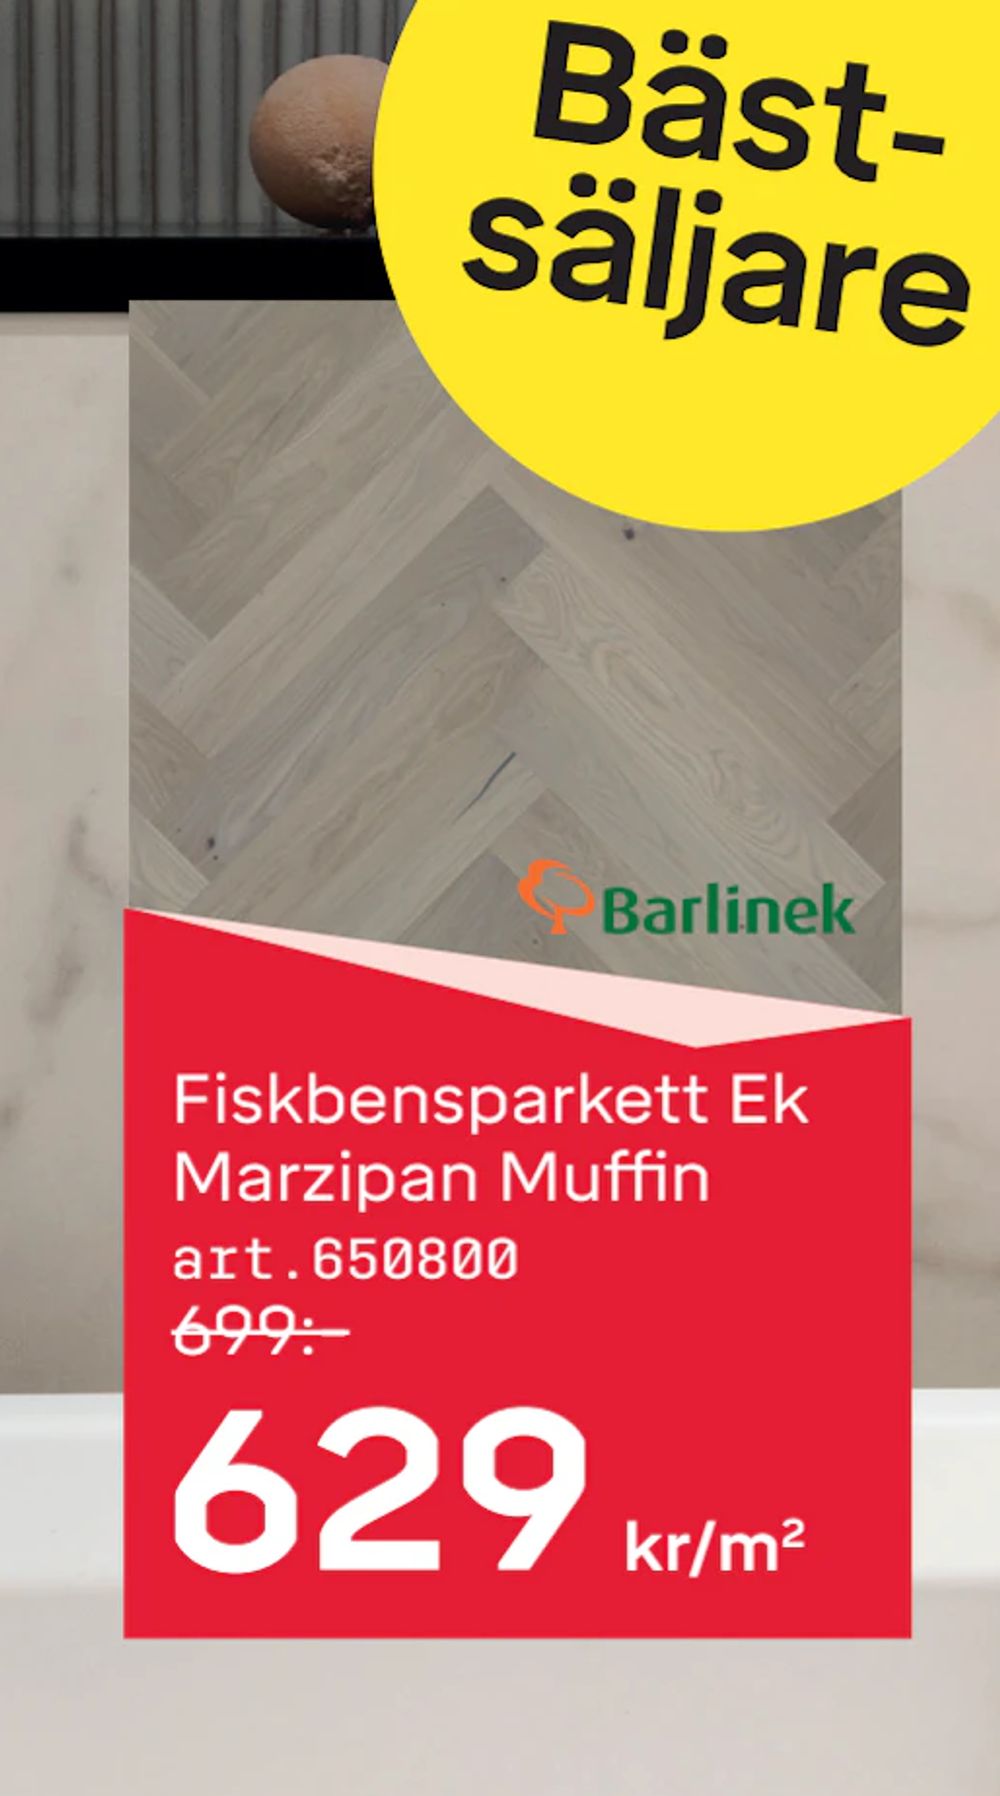 Erbjudanden på Fiskbensparkett Ek Marzipan Muffin från Byggmax STUDIO för 629 kr